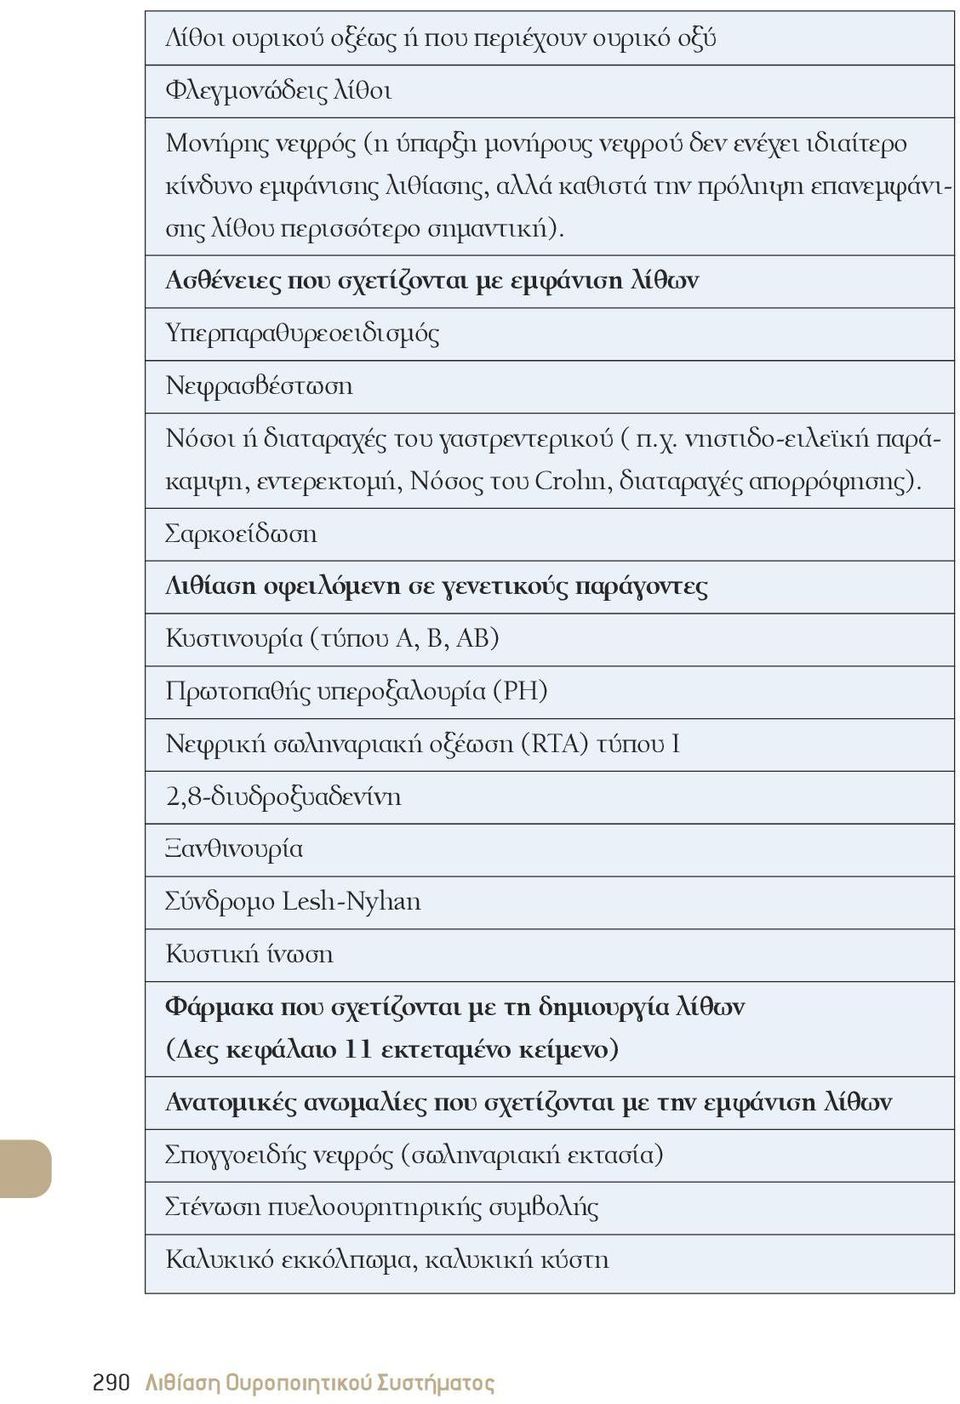 Σαρκοείδωση Λιθίαση οφειλόμενη σε γενετικούς παράγοντες Κυστινουρία (τύπου A, B, AB) Πρωτοπαθής υπεροξαλουρία (PH) Νεφρική σωληναριακή οξέωση (RTA) τύπου I 2,8-διυδροξυαδενίνη ξανθινουρία Σύνδρομο